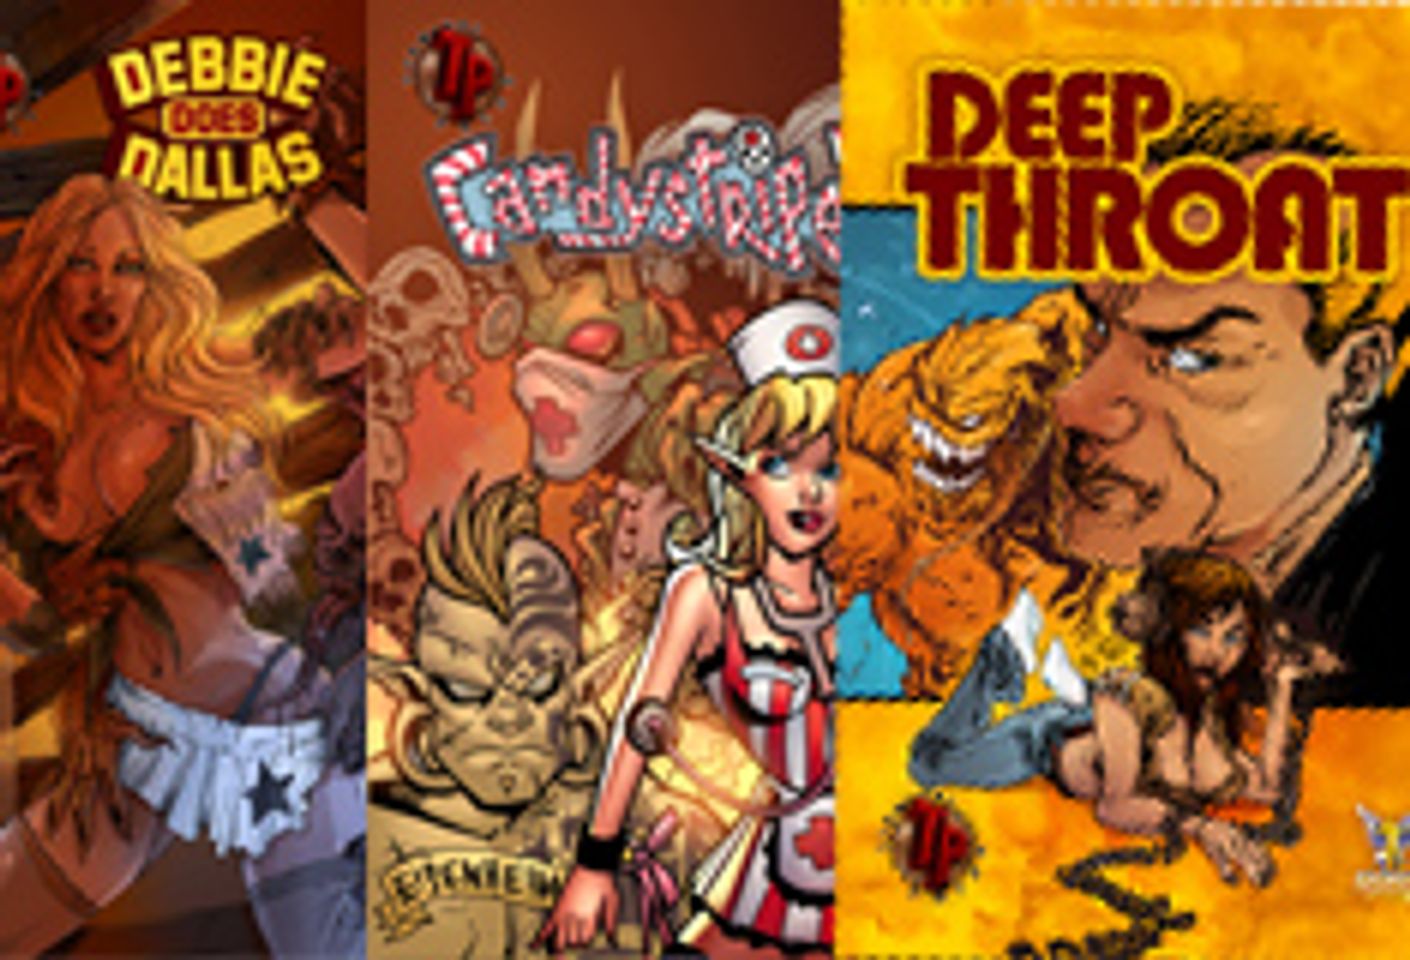 Vivid porn comics 2008 editions